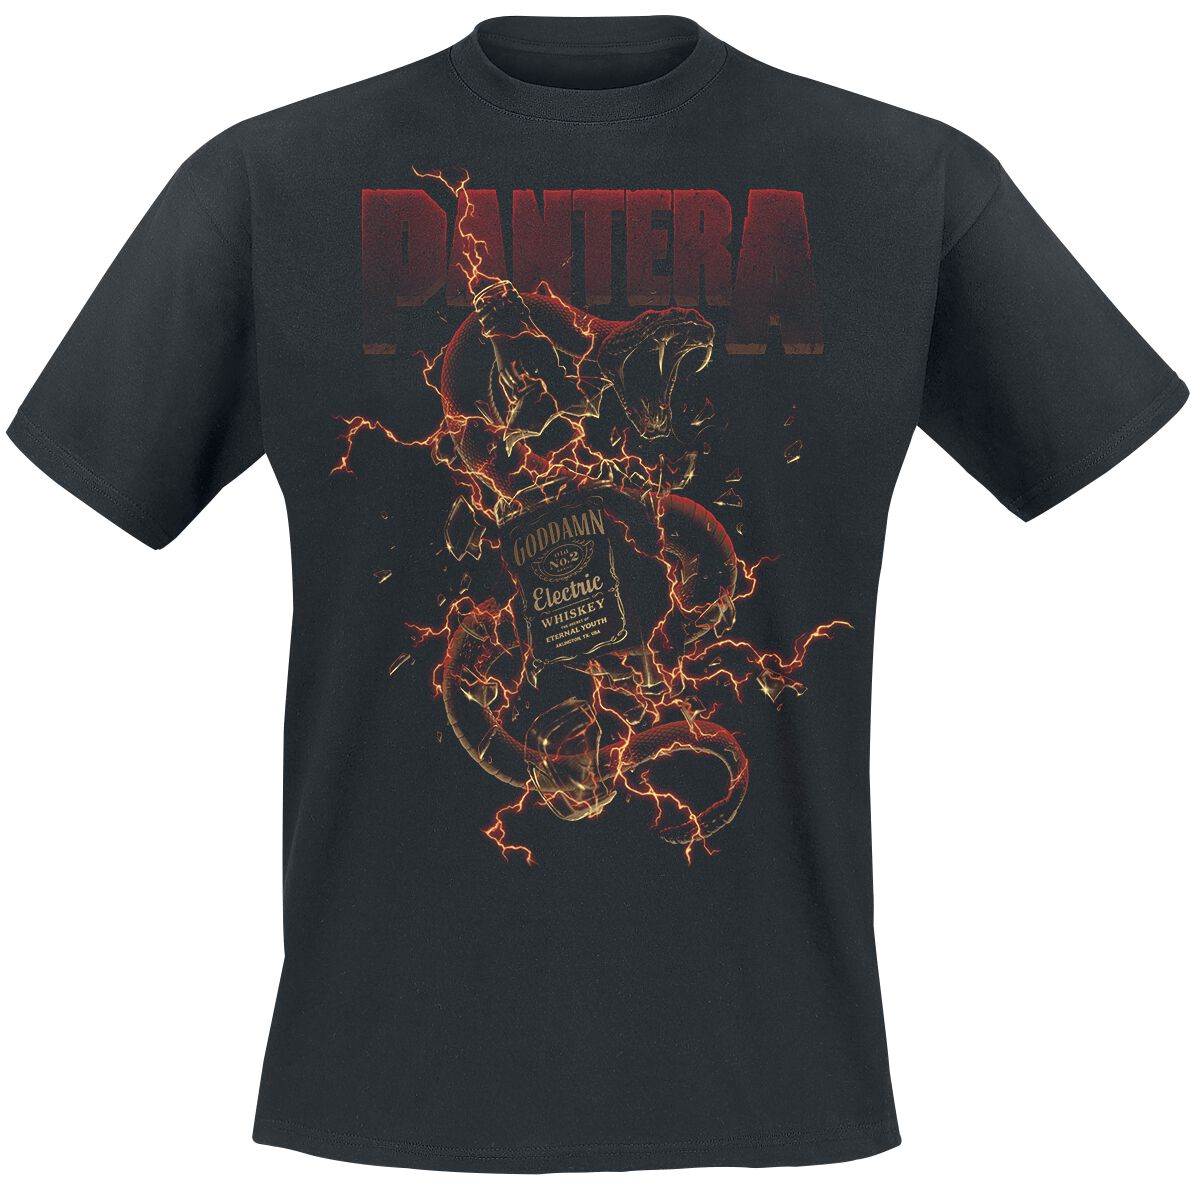 Pantera T-Shirt - Whiskey Snake - M bis 3XL - für Männer - Größe 3XL - schwarz  - Lizenziertes Merchandise!